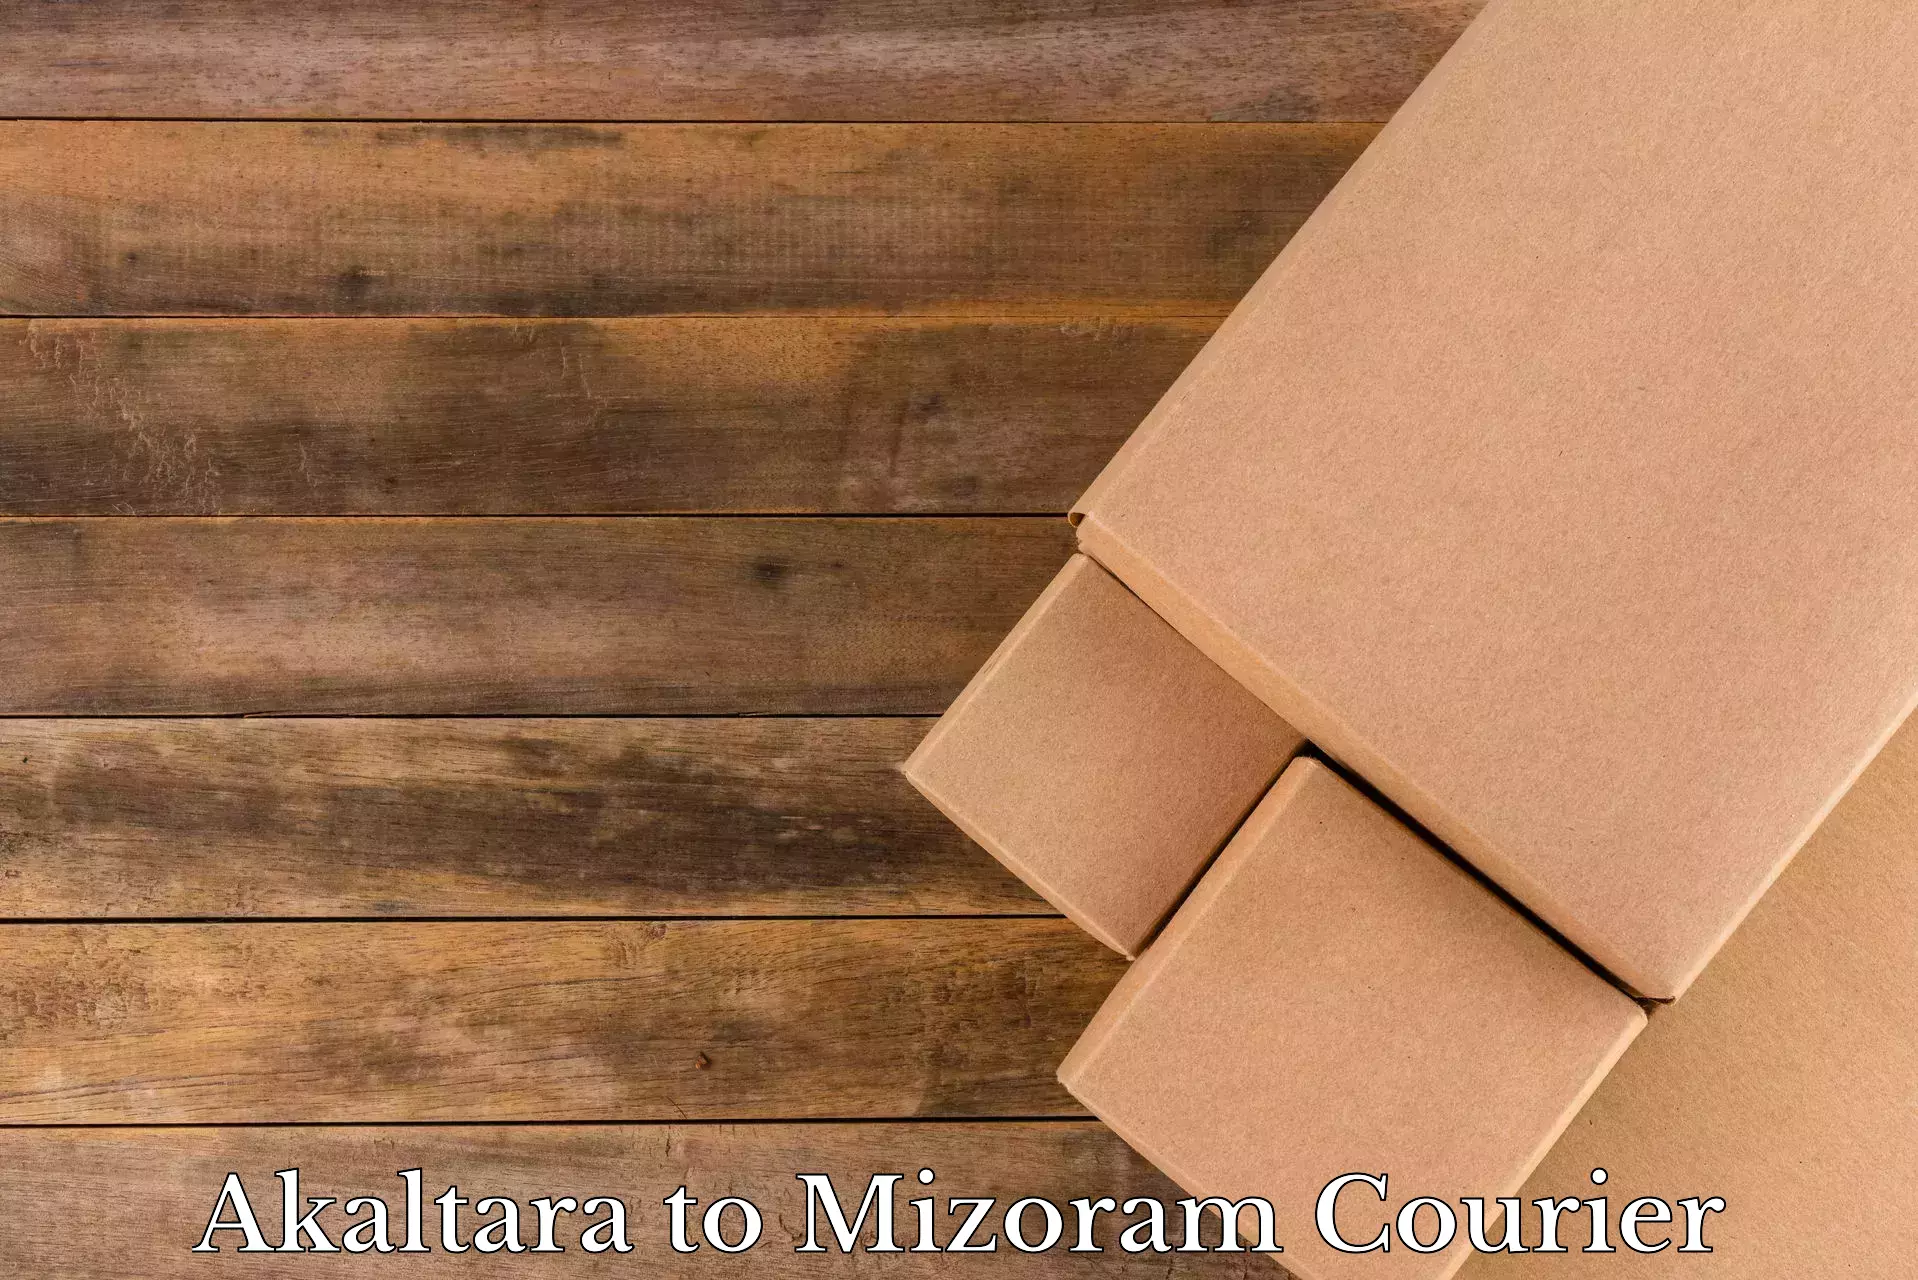 Personalized moving service Akaltara to Mizoram